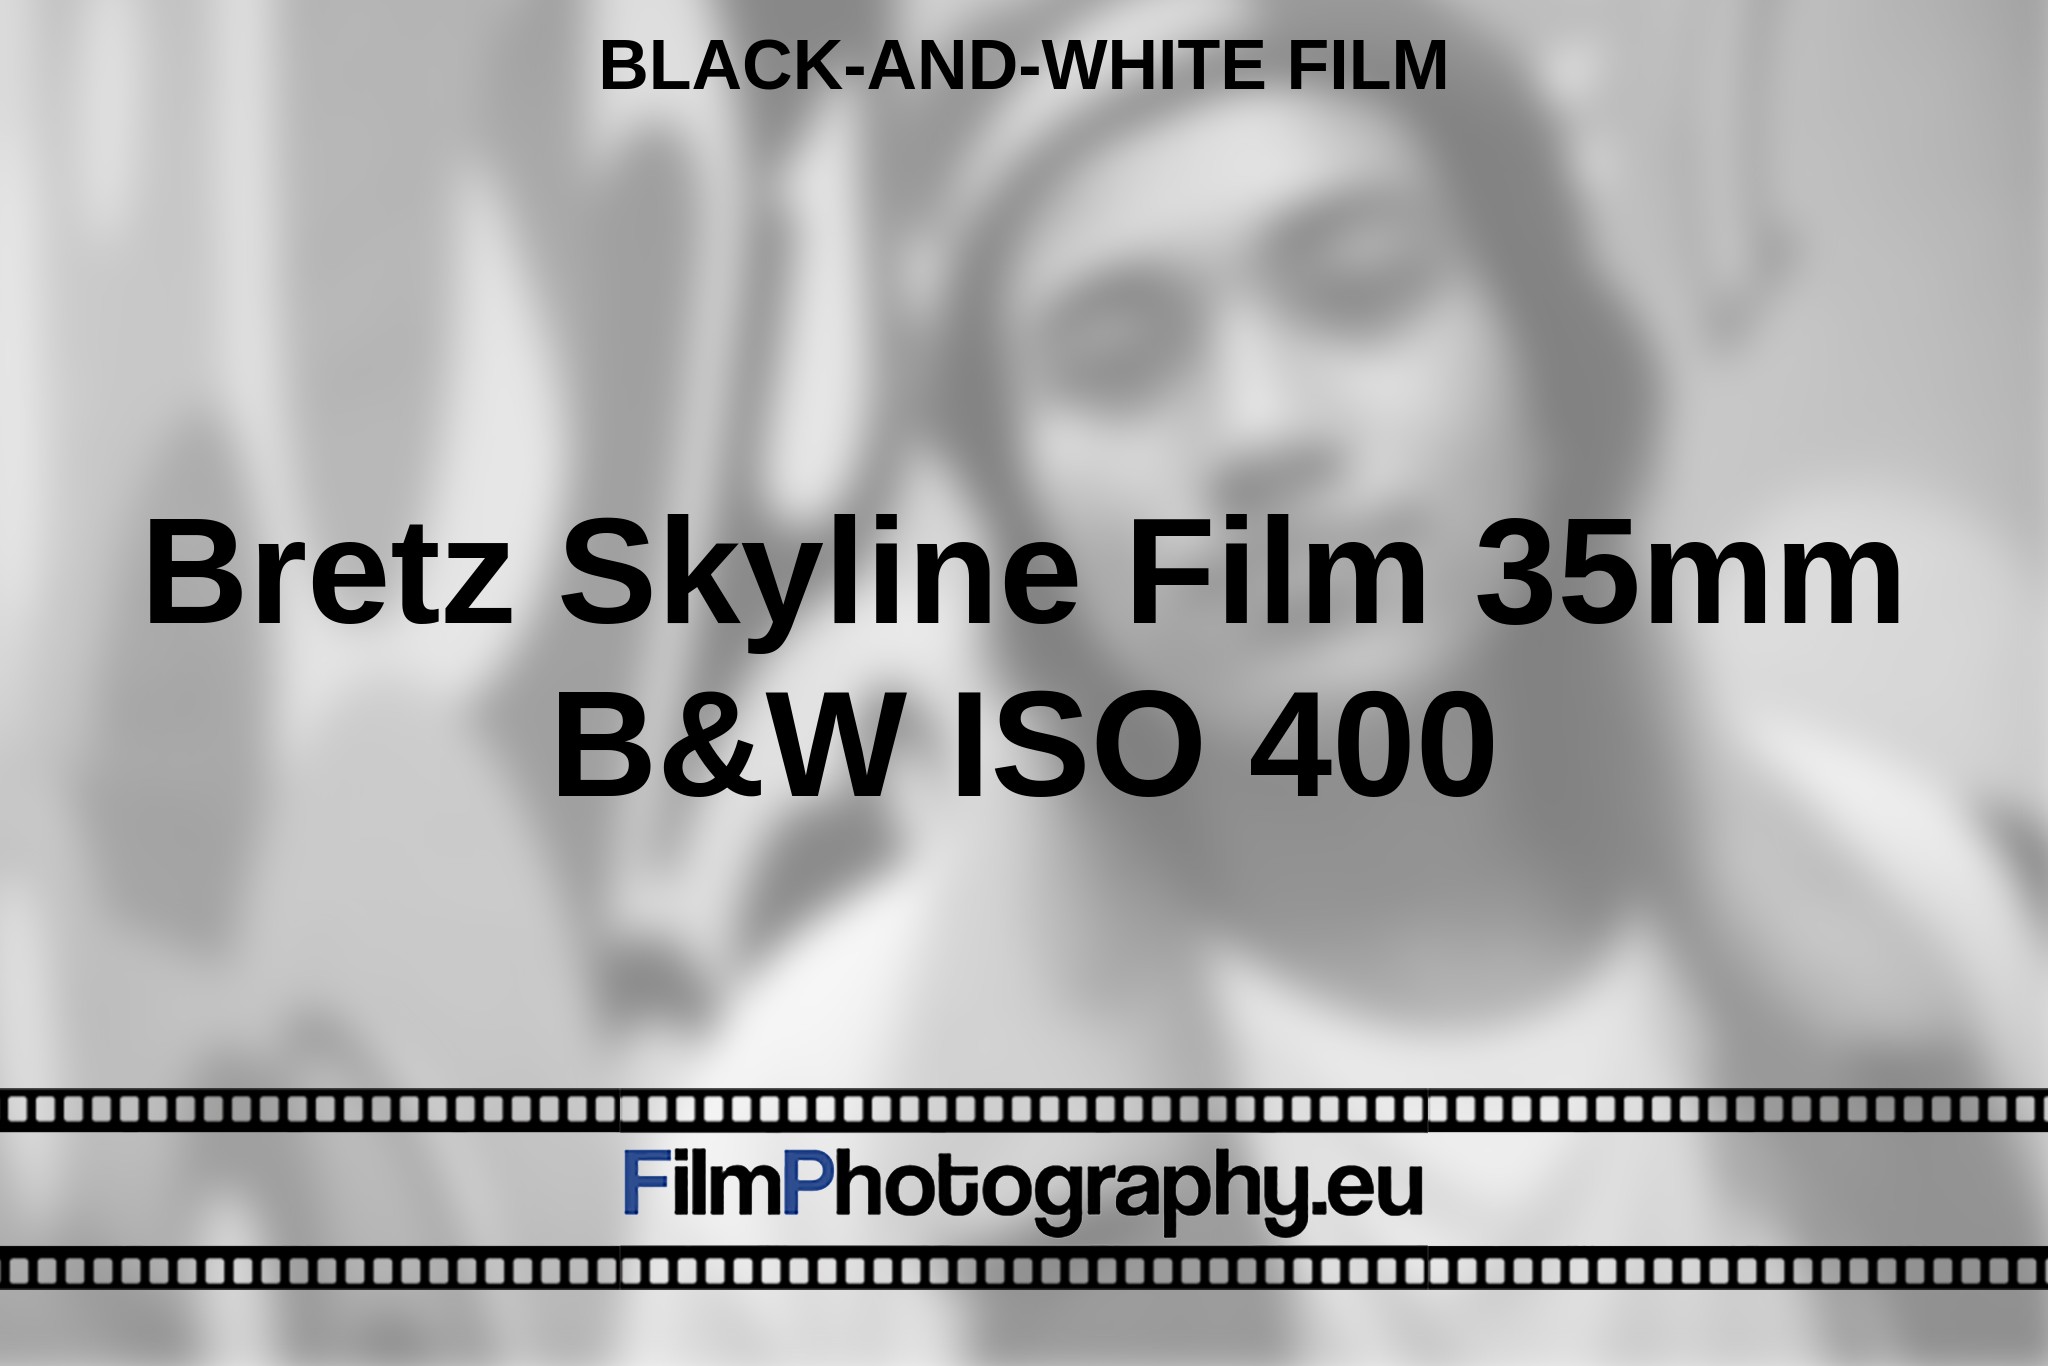 bretz-skyline-film-35mm-b-w-iso-400-black-and-white-film-bnv.jpg